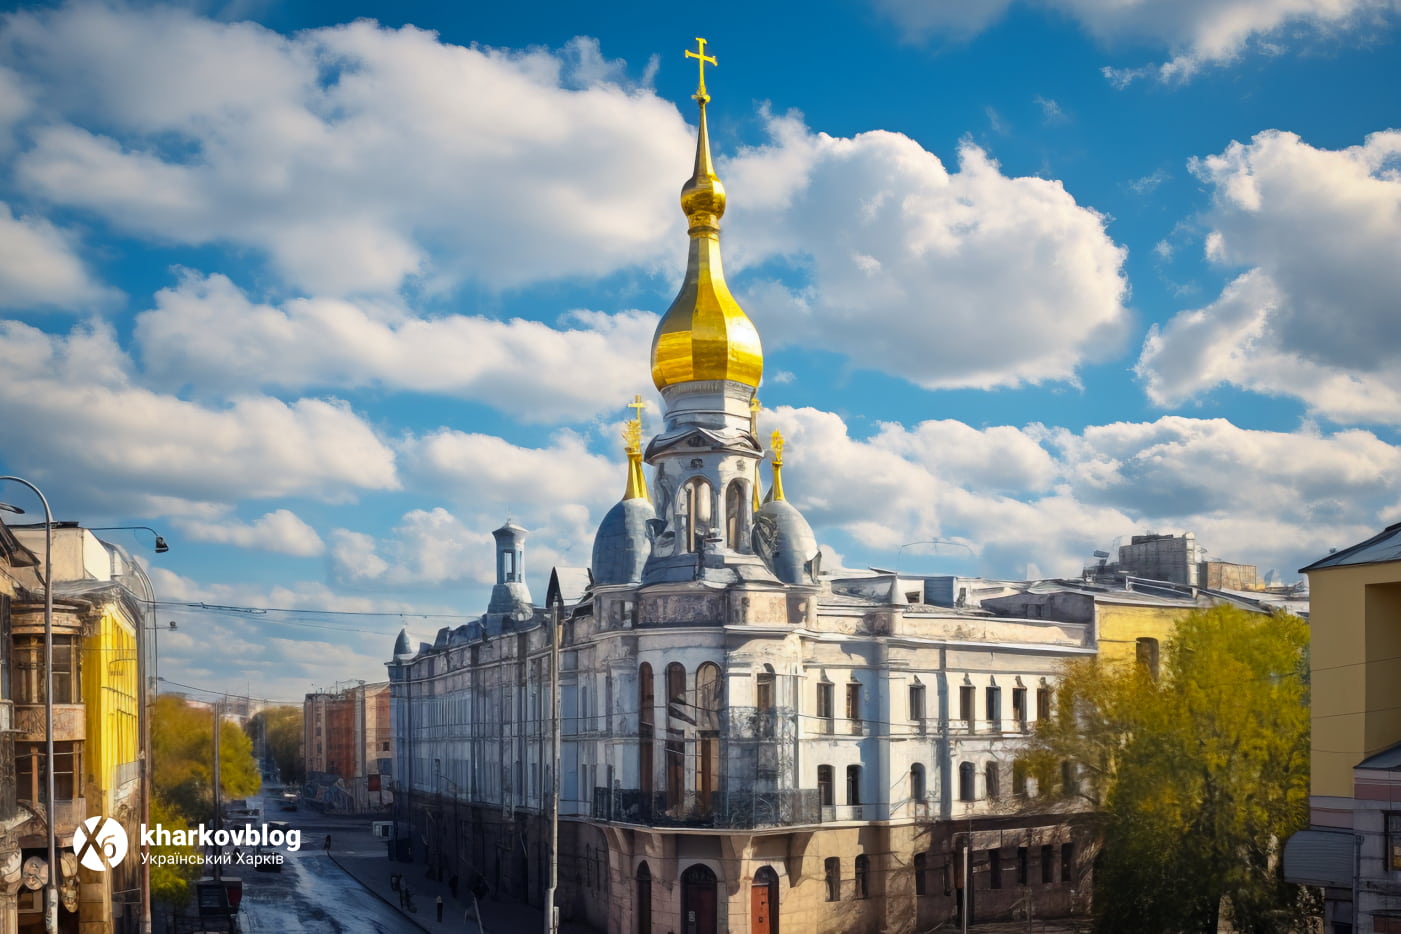 Харьков online: ситуация в сфере безопасности, политики и экономики